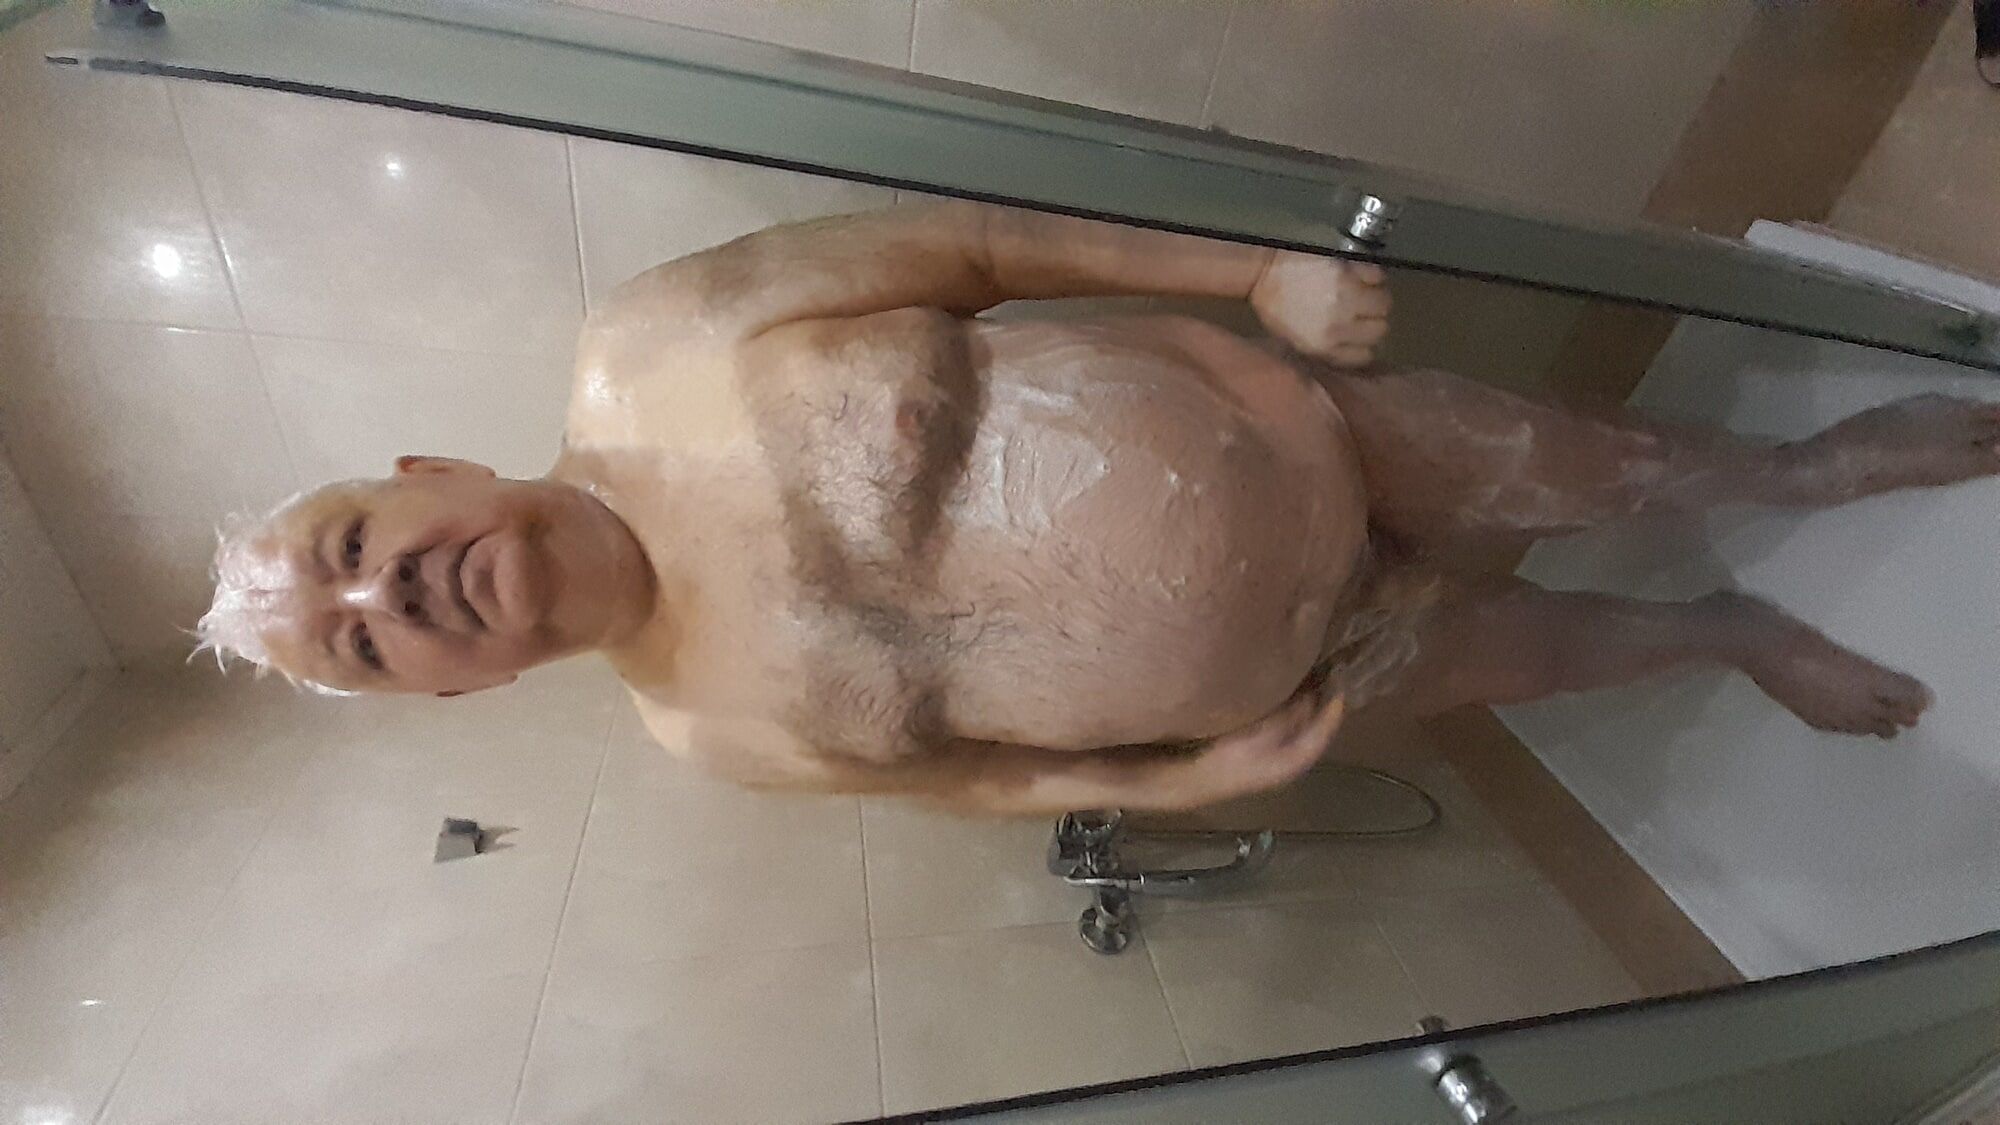 Shower daddy